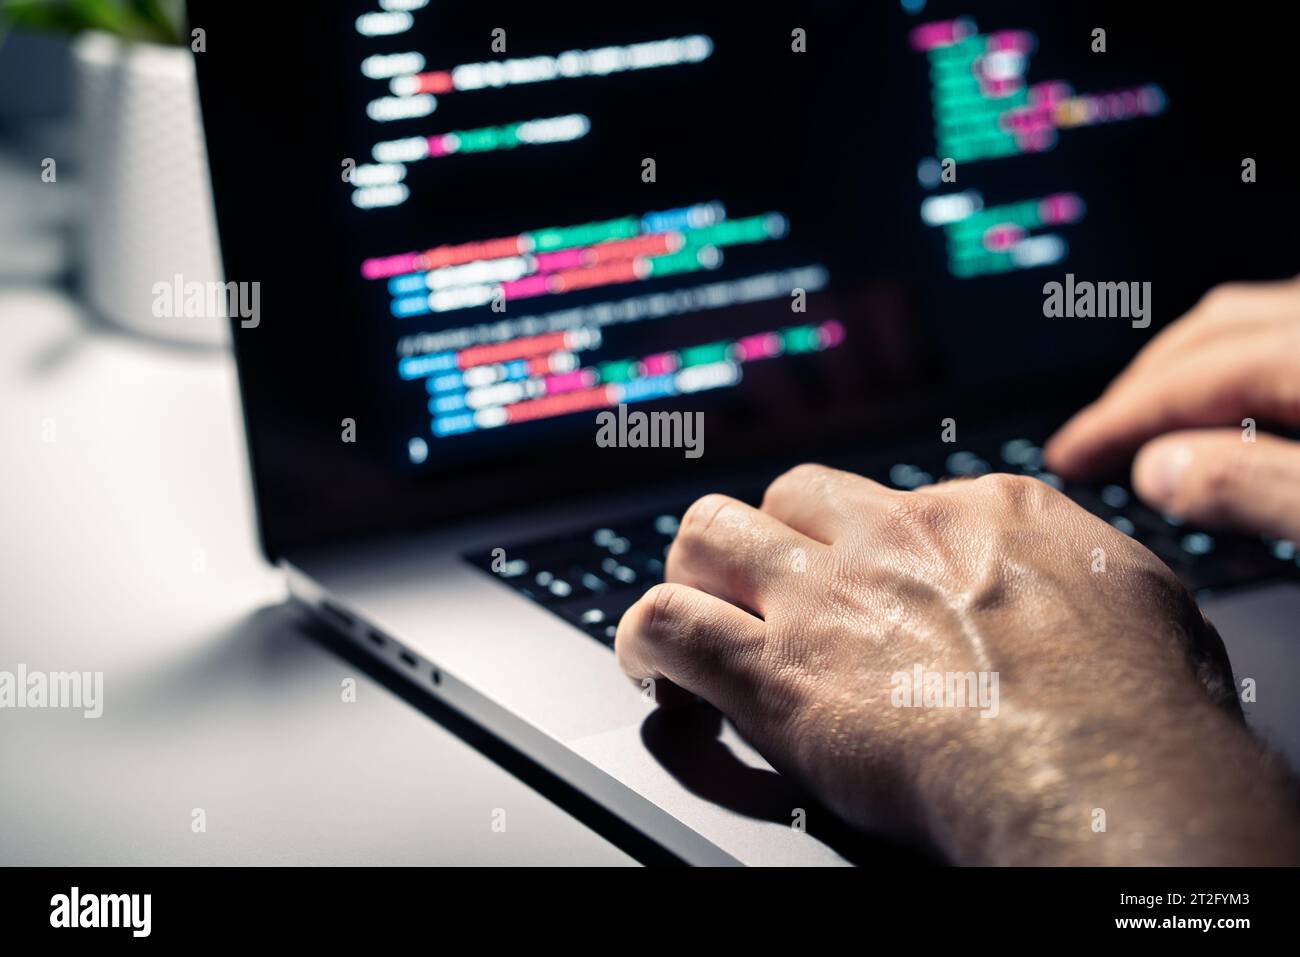 Hacker mit Malware-Code auf dem Computerbildschirm. Cybersicherheit, Datenschutz oder Cyberangriff. Programmierer oder Betrug kriminelle Schreiben von Virensoftware. Stockfoto